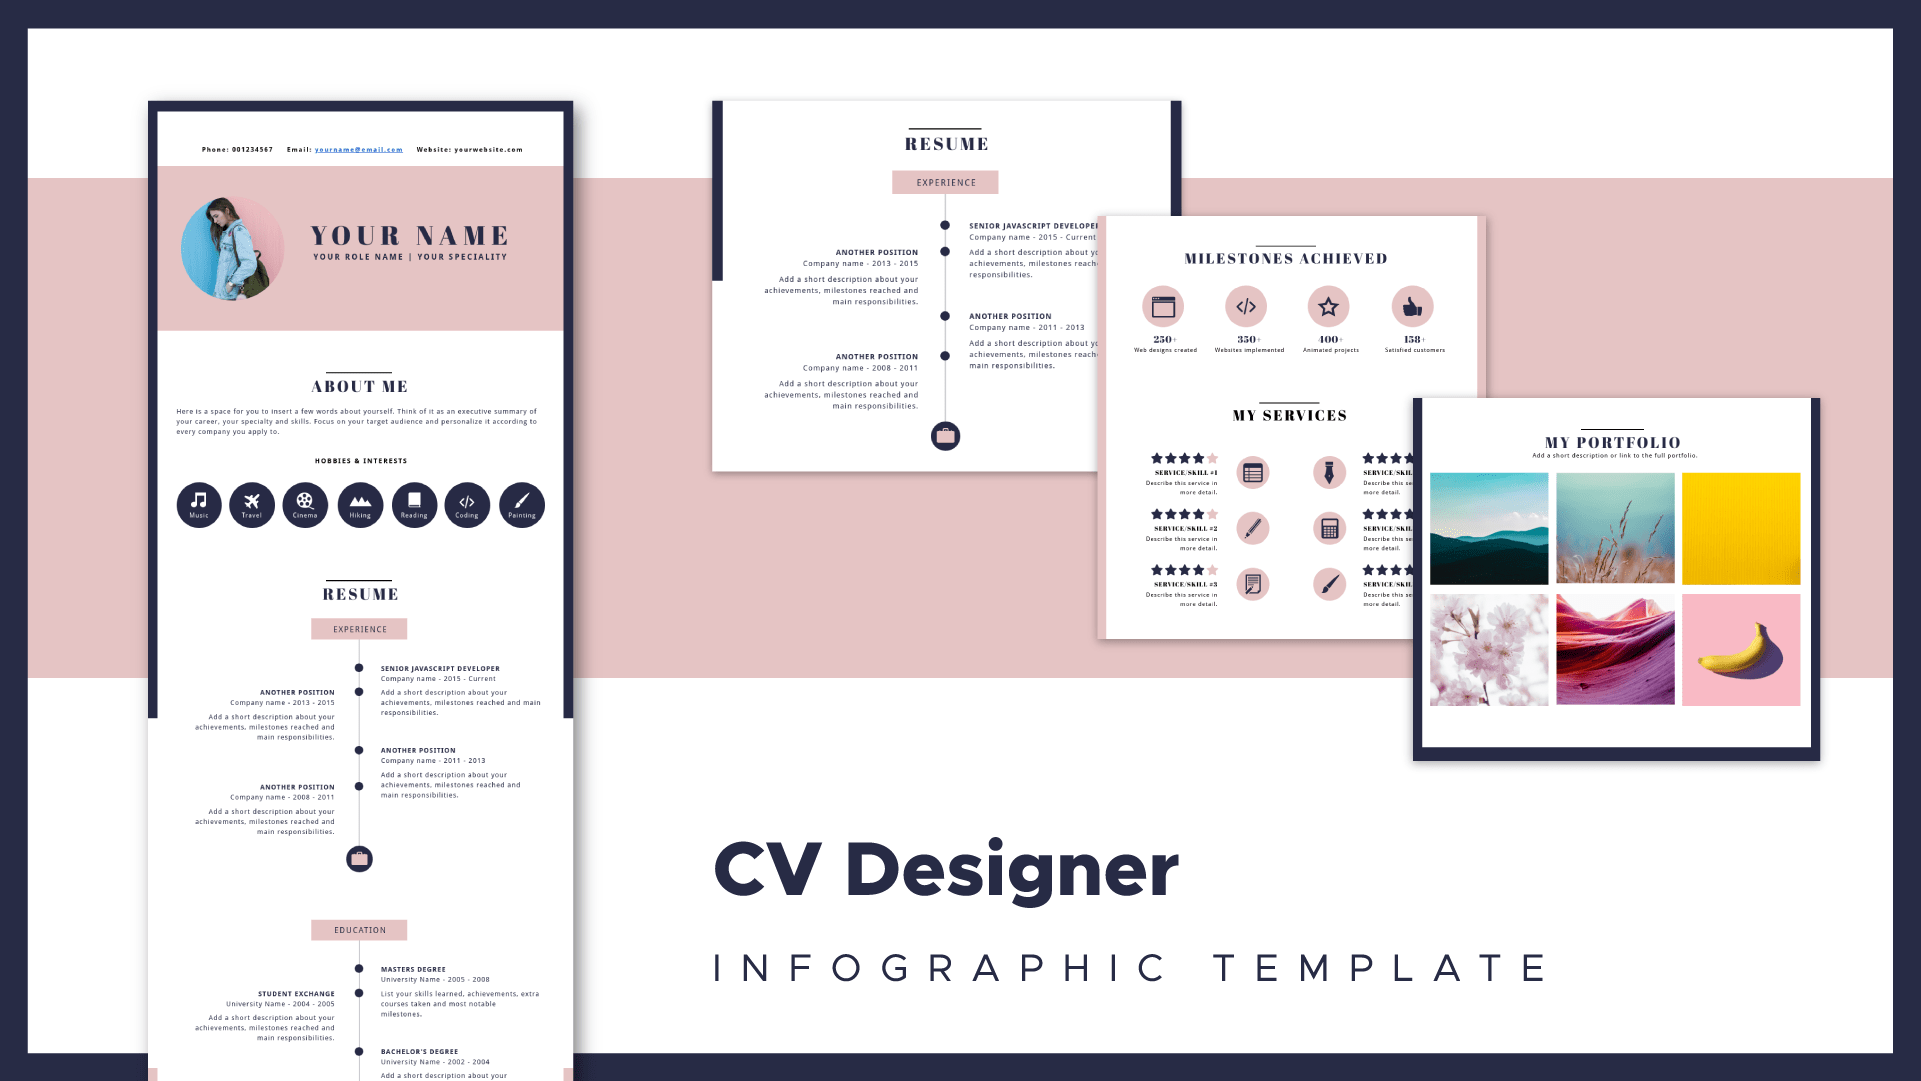 resume builder and cover letter builder available in Piktochart, CV designer